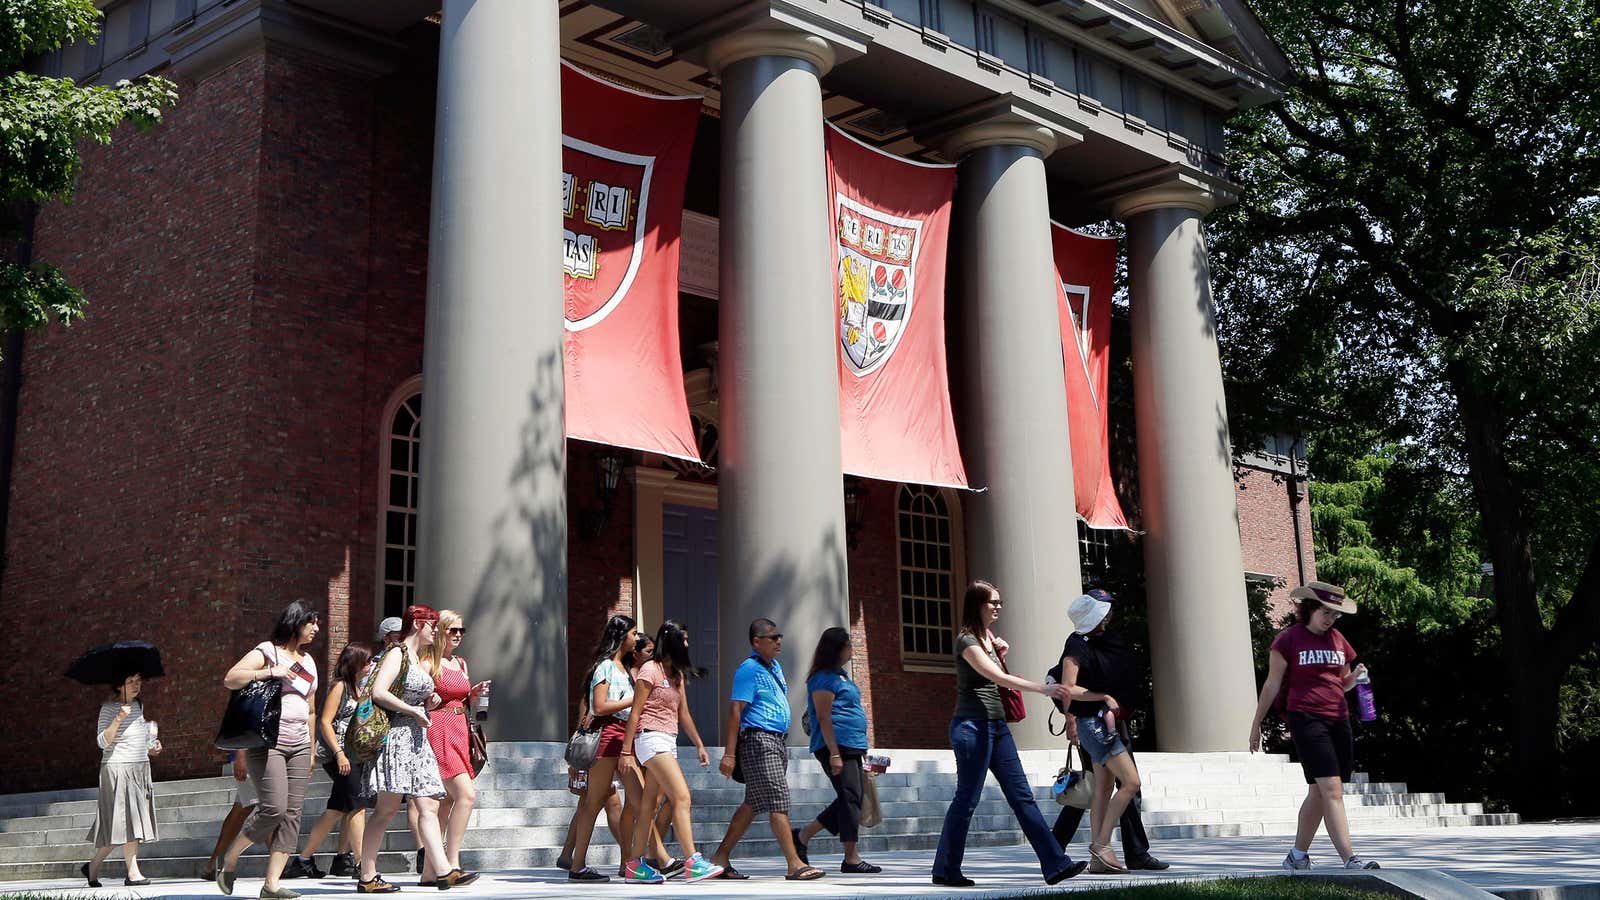 “Sea turtles” attend top US universities like Harvard